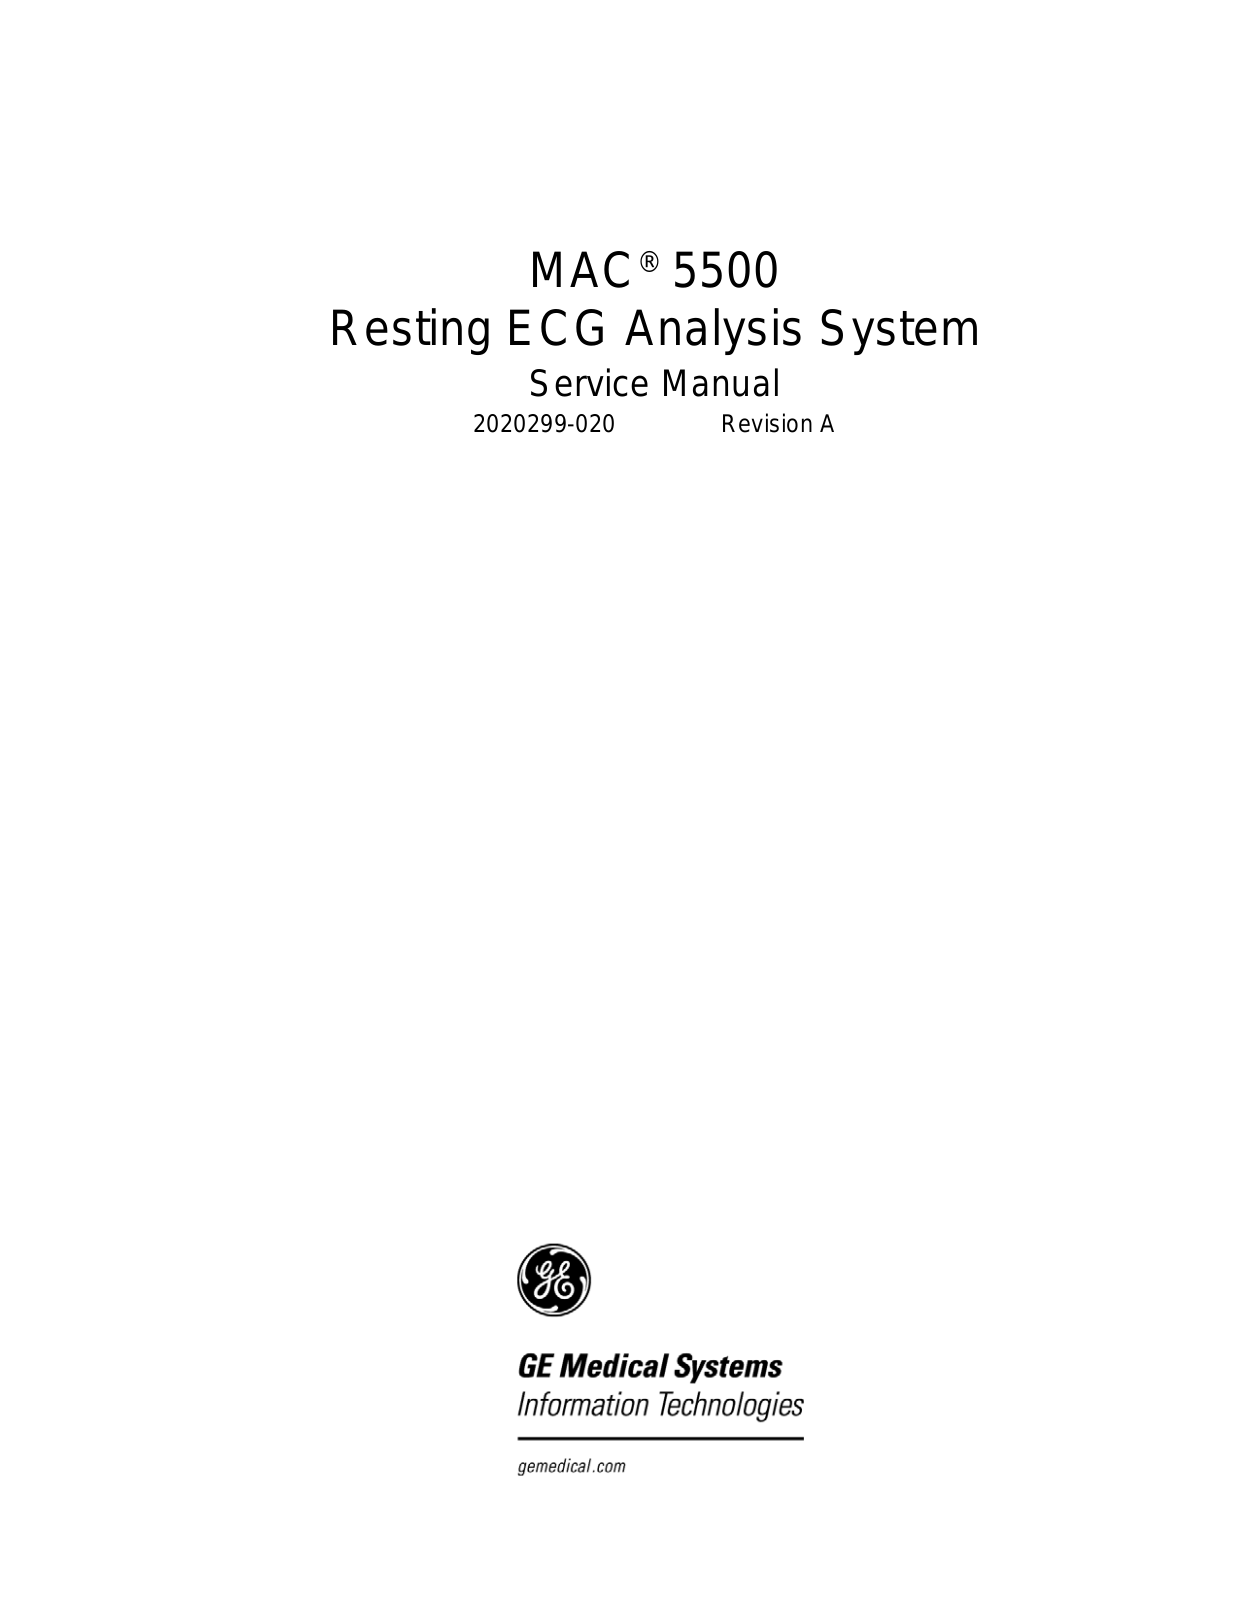 GE MAC 5500 User manual